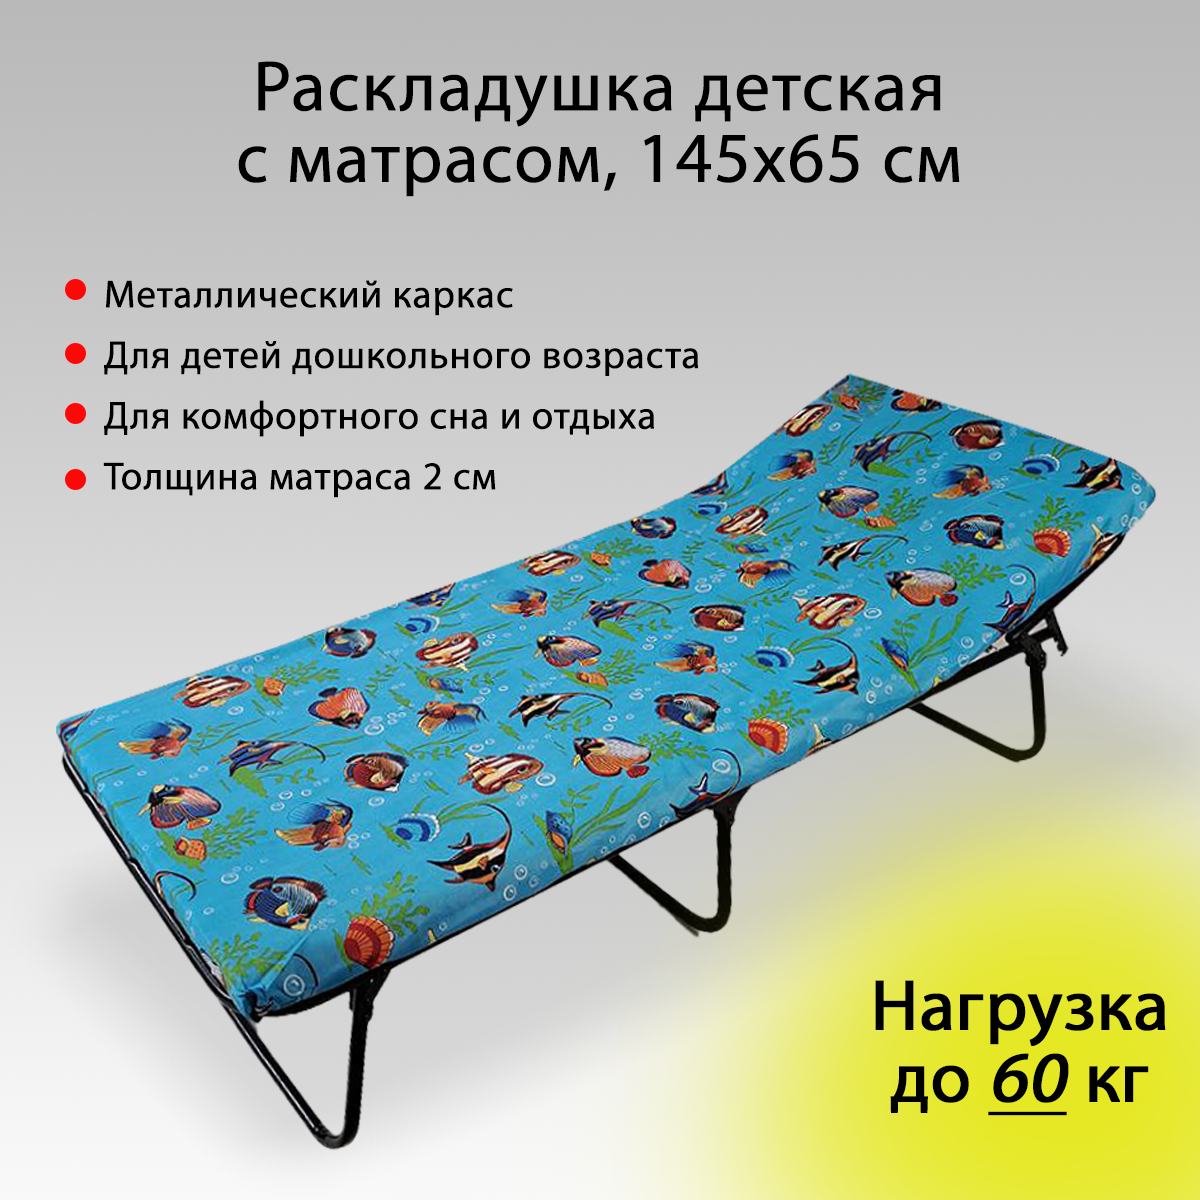 Раскладушка с матрасом детская односпальная складная кровать для детей туристическая мебель в палатку